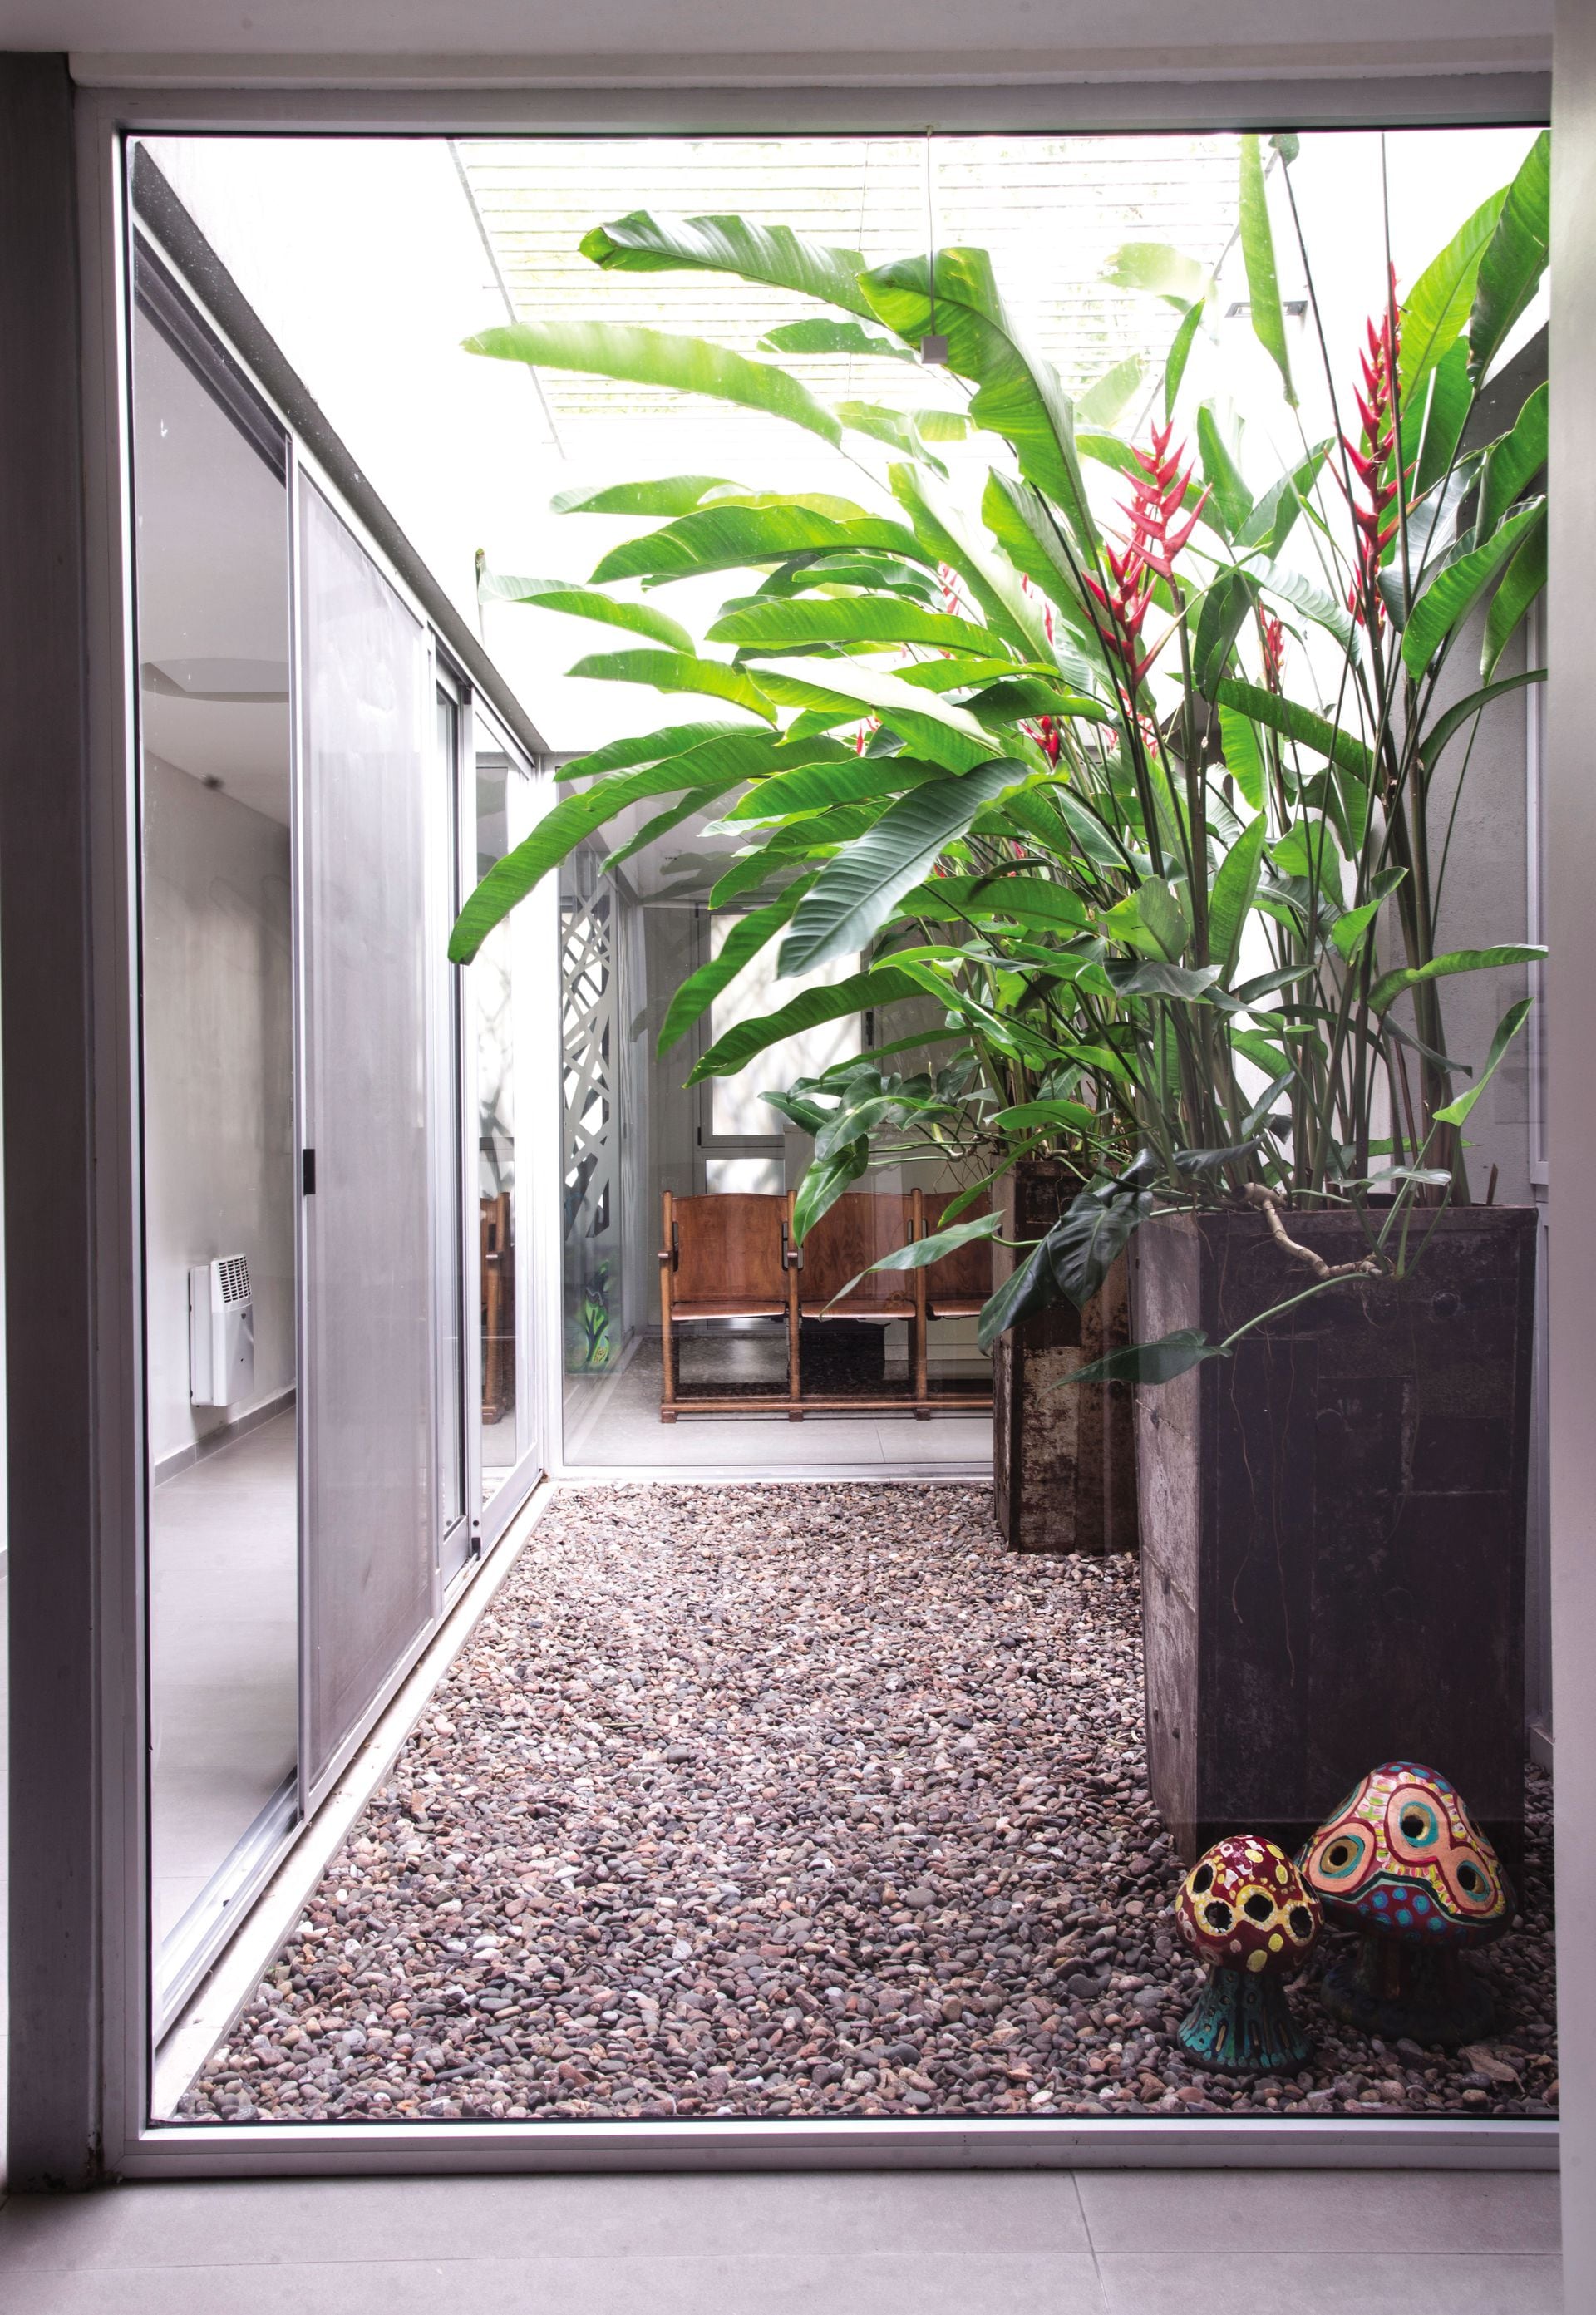 Un patio interno con heliconias como protagonistas indiscutidas